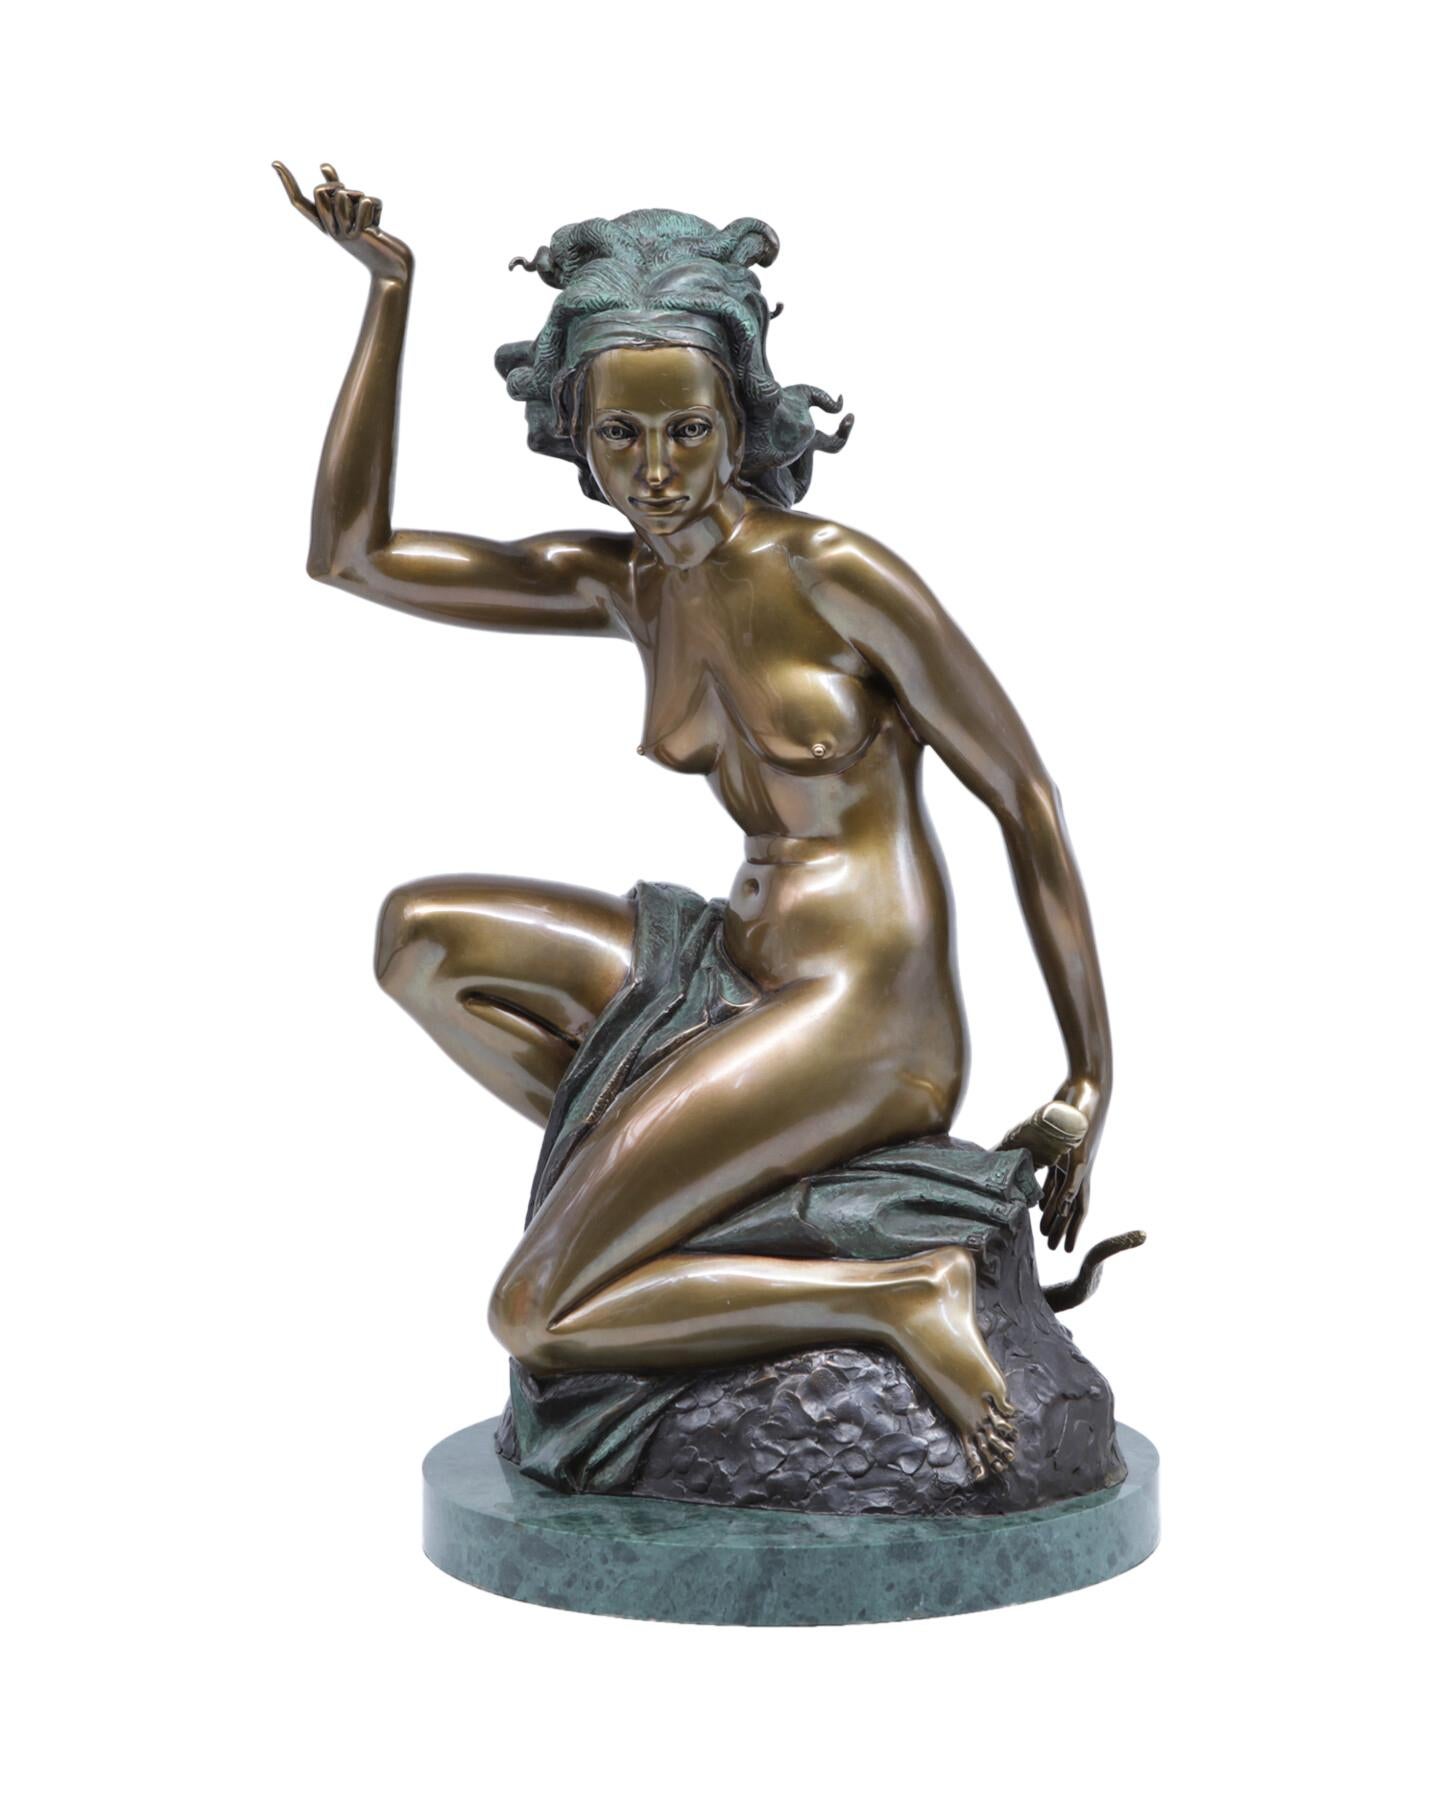 Figurative Sculpture Volodymyr MYKYTENKO - La chasse au lion, sculpture en bronze de Volodymyr Mykytenko, 2002